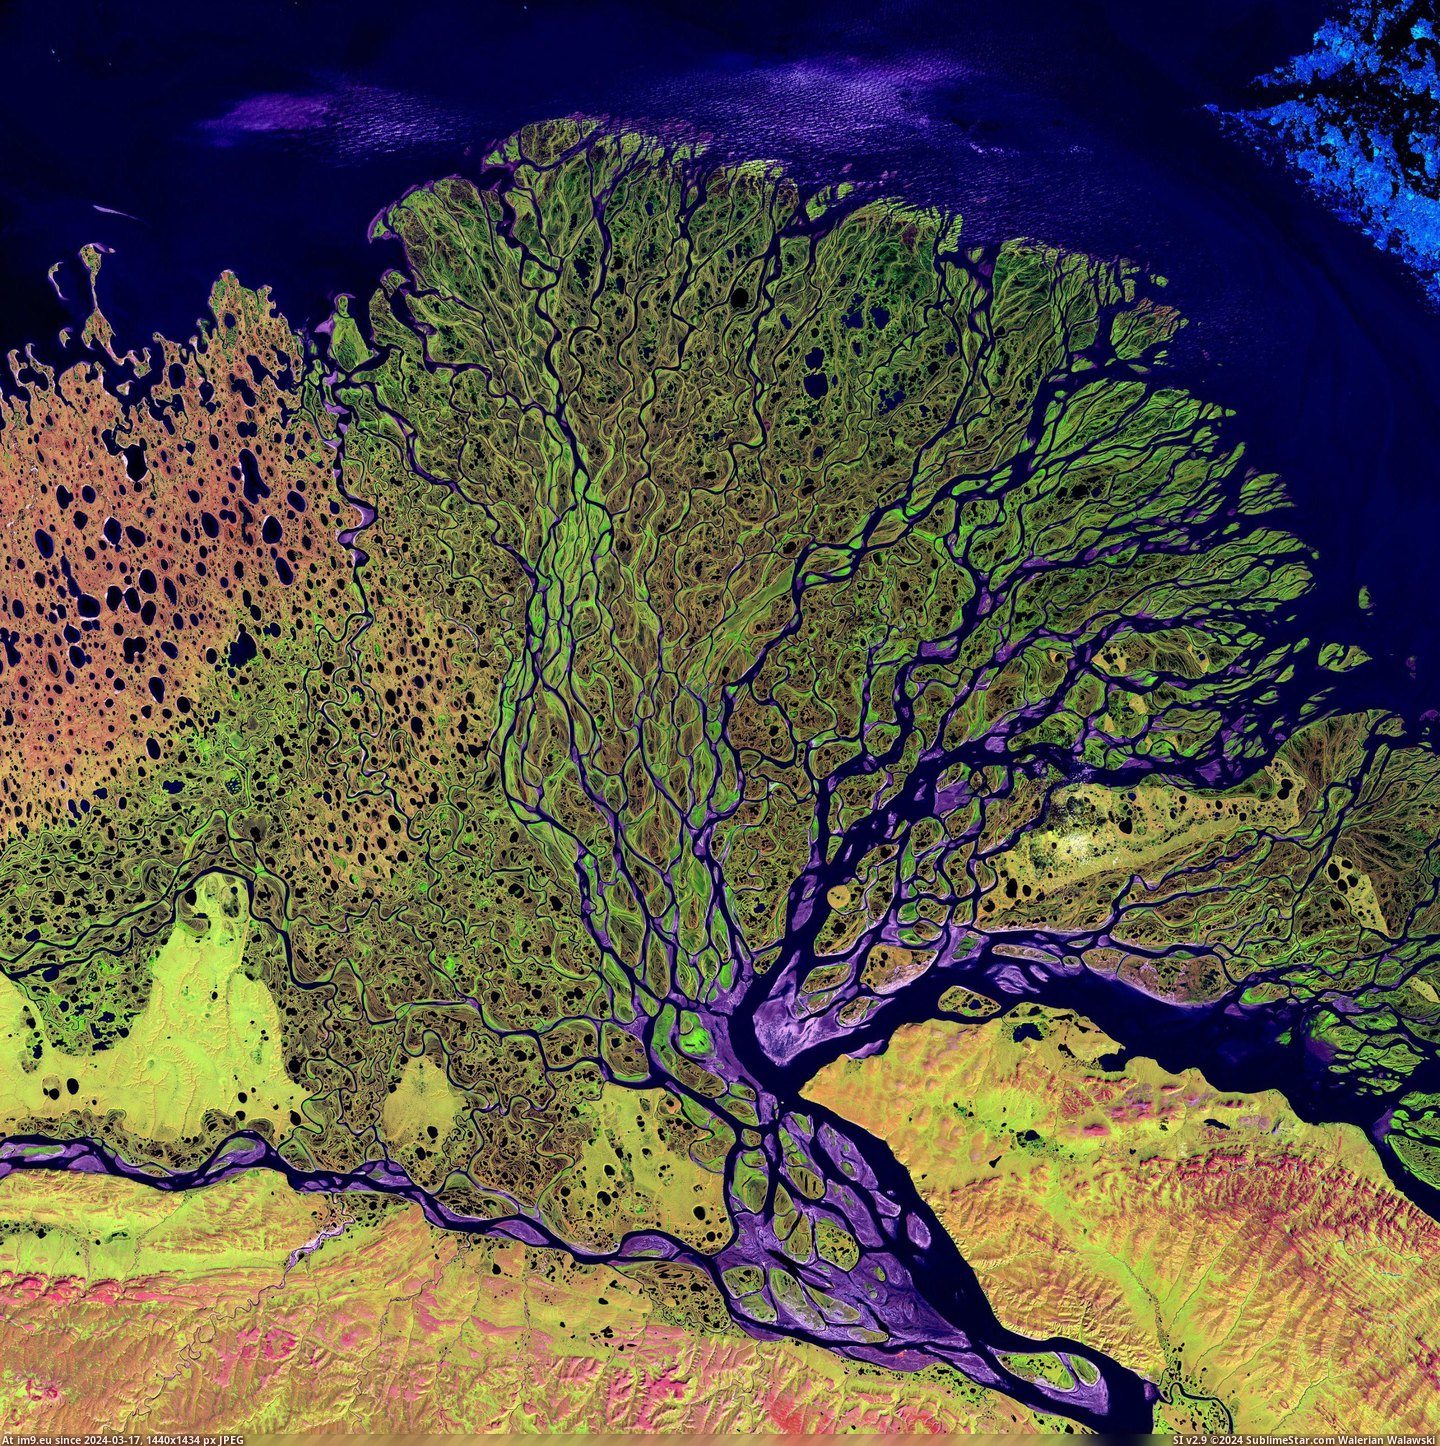 #River #Delta #Siberia #Lena [Earthporn] Lena River Delta, Siberia [3100 x 3100] Pic. (Изображение из альбом My r/EARTHPORN favs))